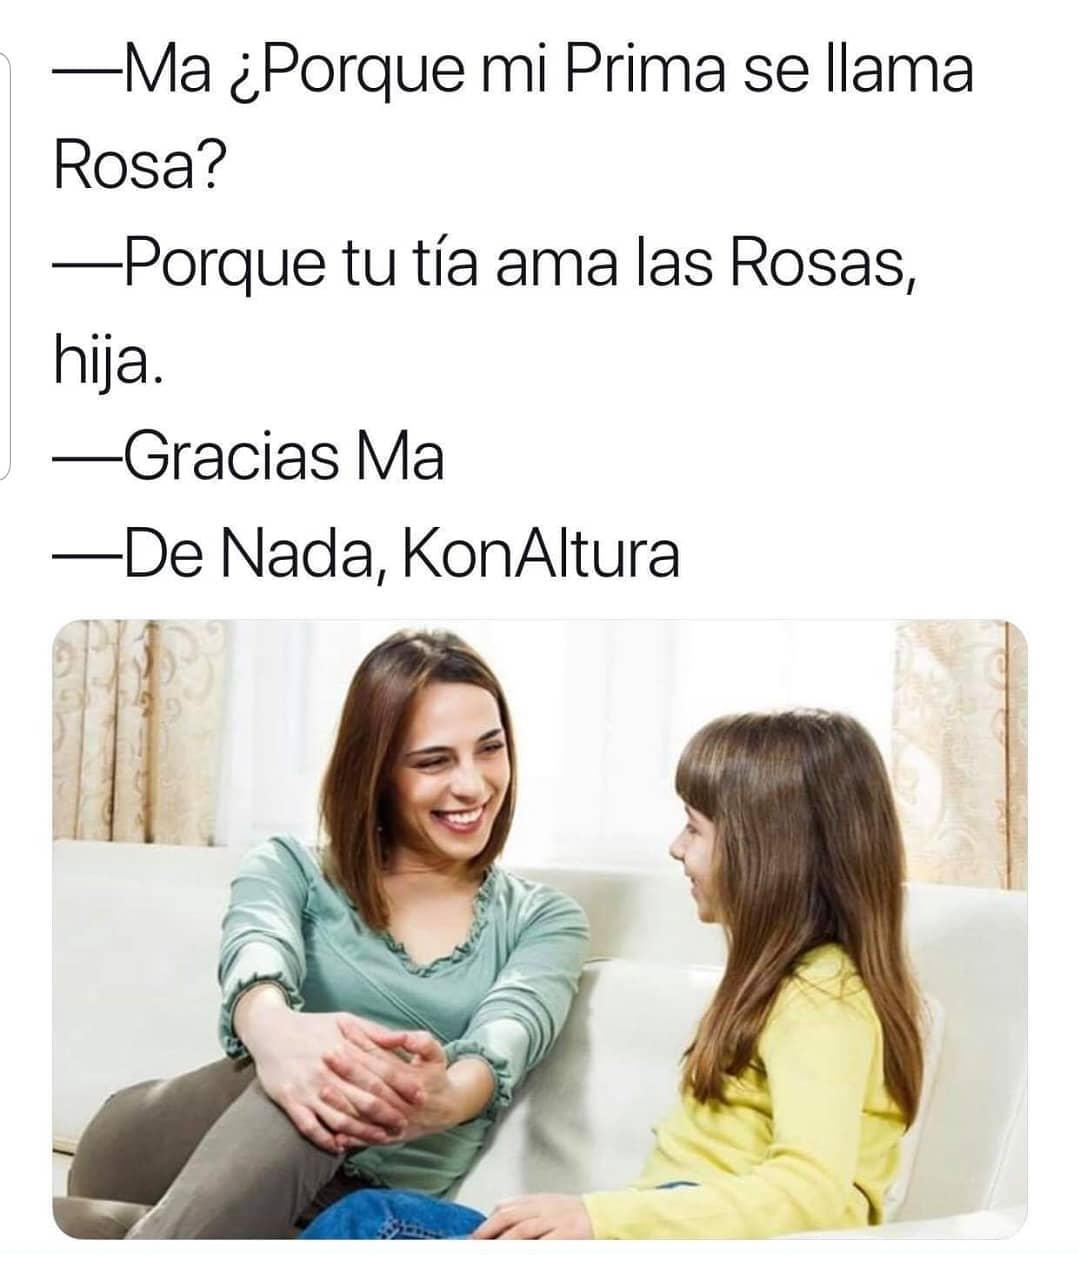 Ma ¿Porque mi Prima se llama Rosa?  Porque tu tía ama las Rosas, hija.  Gracias Ma.  De Nada, KonAltura